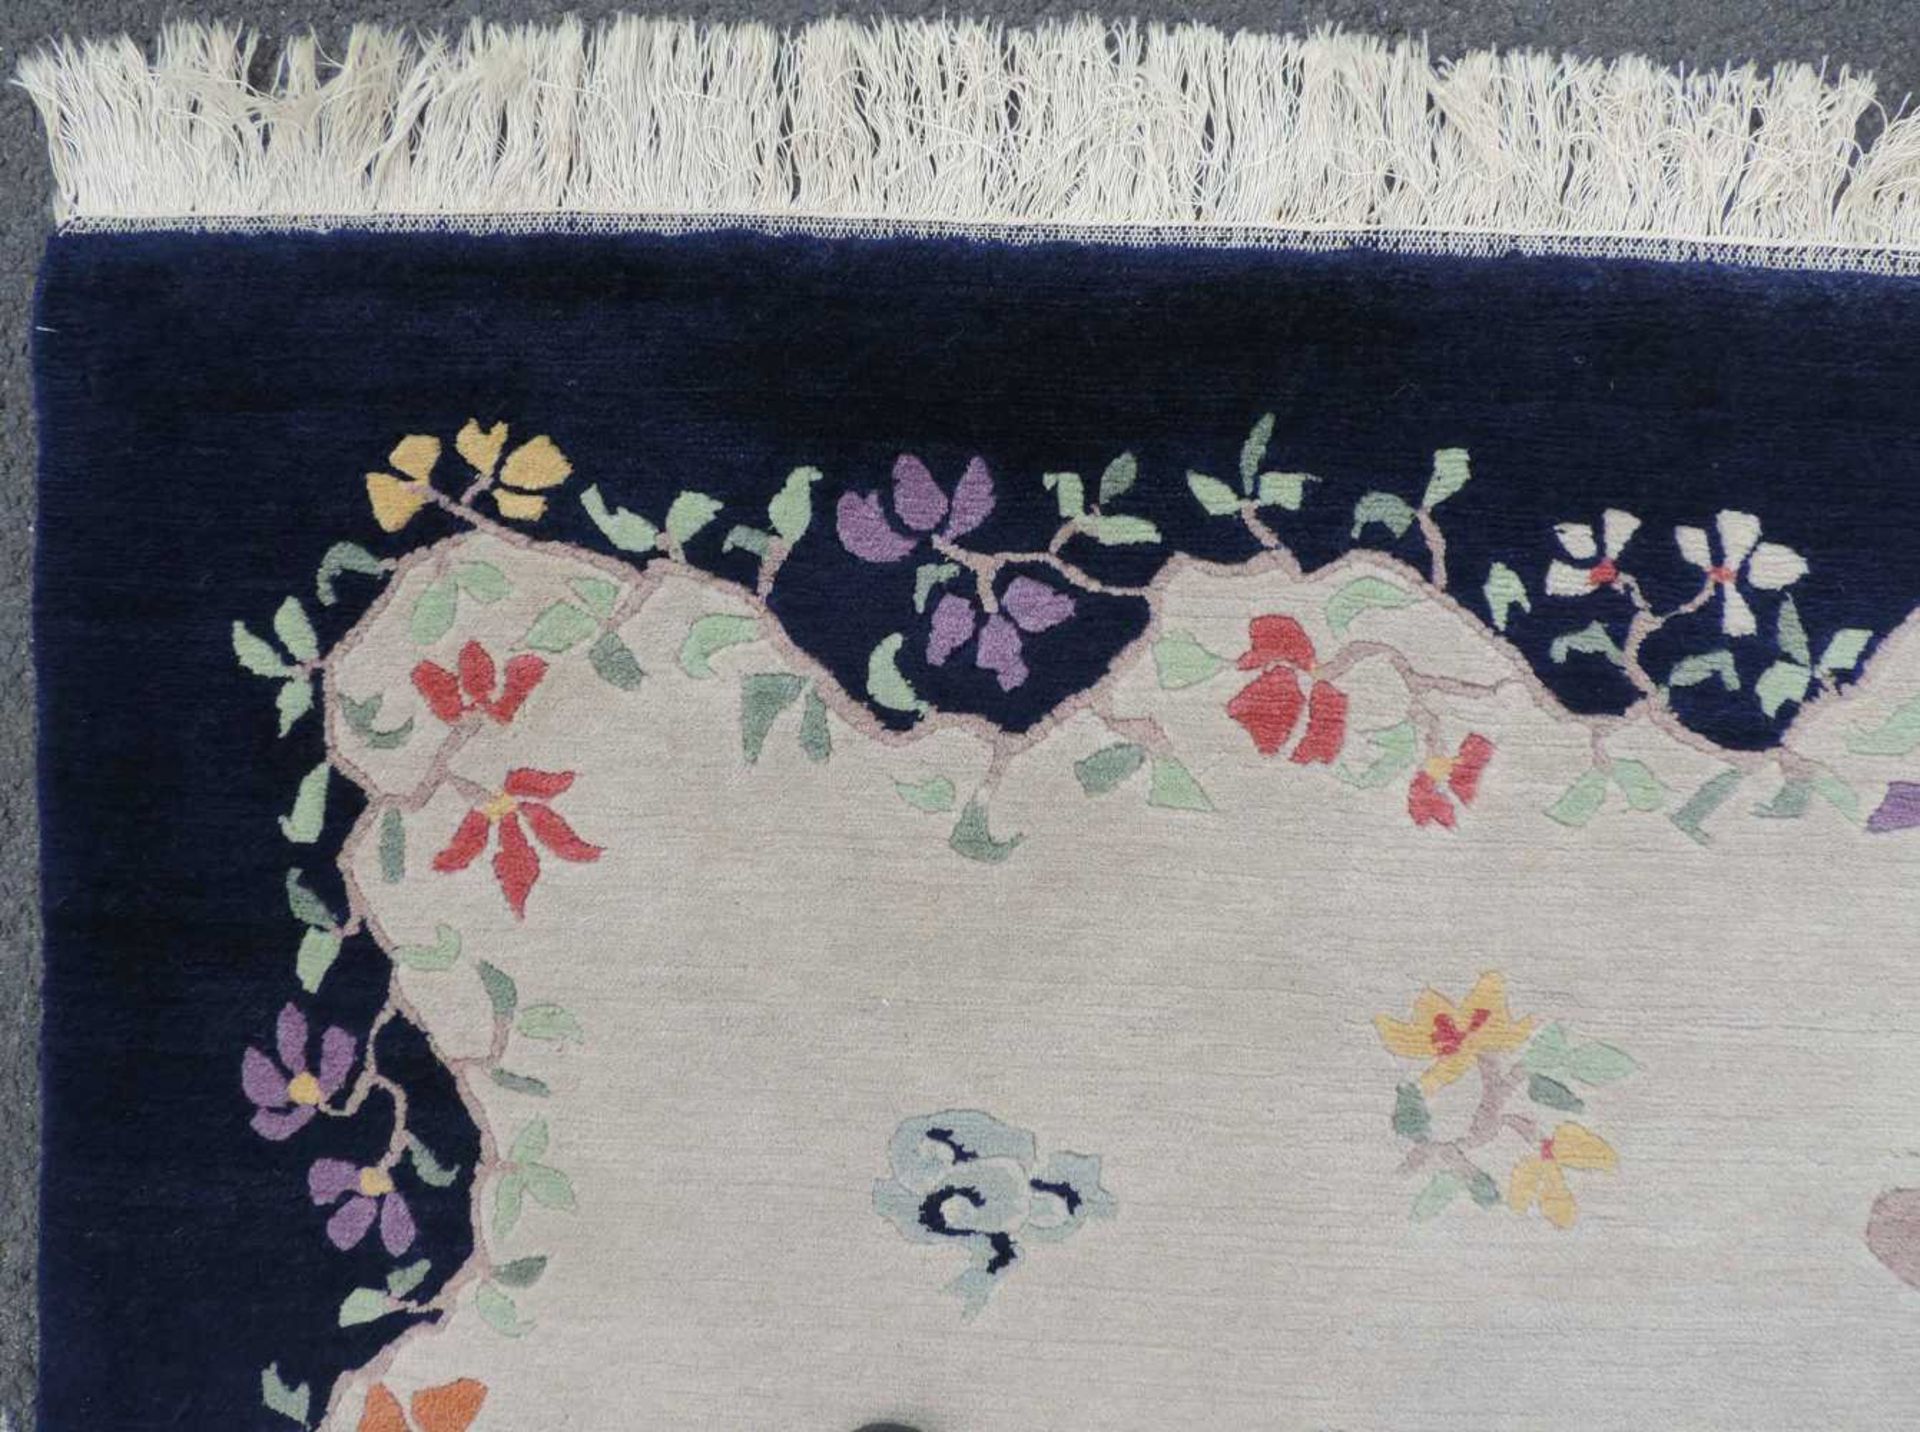 Blütenteppich China. 245 cm x 167 cm. Handgeknüpft, Wolle auf Baumwolle. Blossoms carpet China. - Bild 7 aus 12